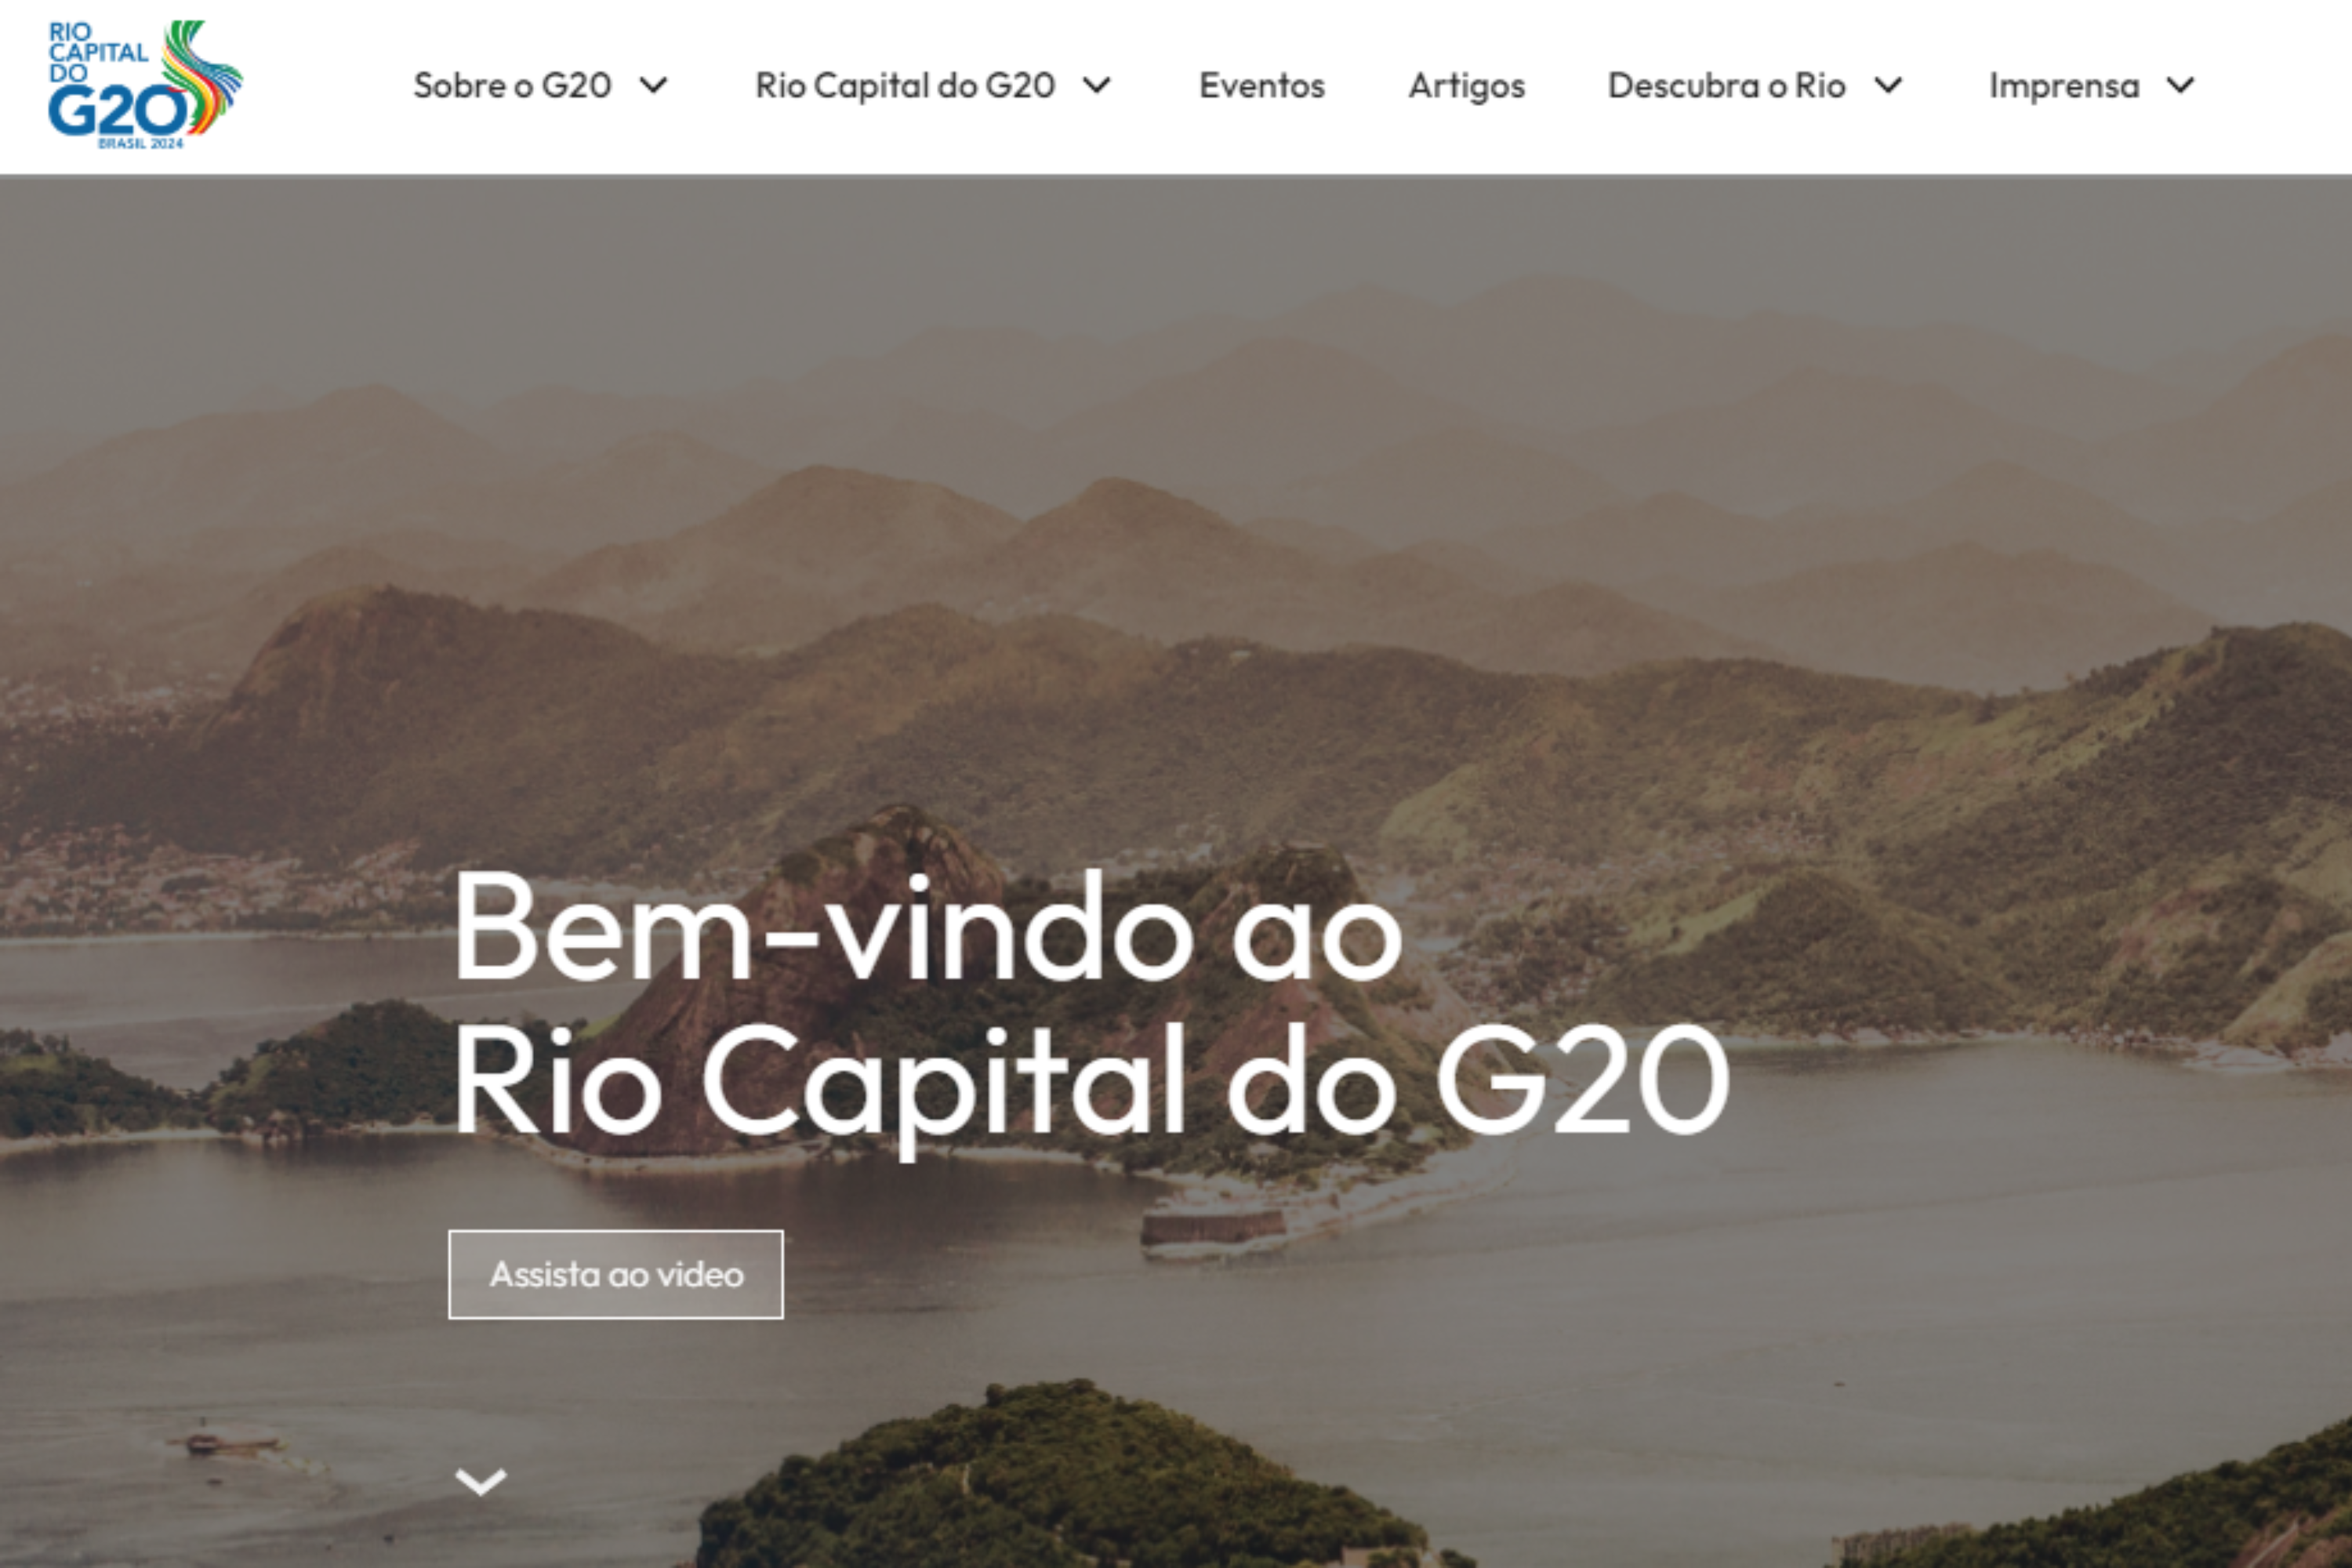 O site, gerenciado pela Prefeitura do Rio de Janeiro, busca ser um canal oficial sobre o G20 na cidade. | Imagem: Divulgação/Prefeitura Rio de Janeiro